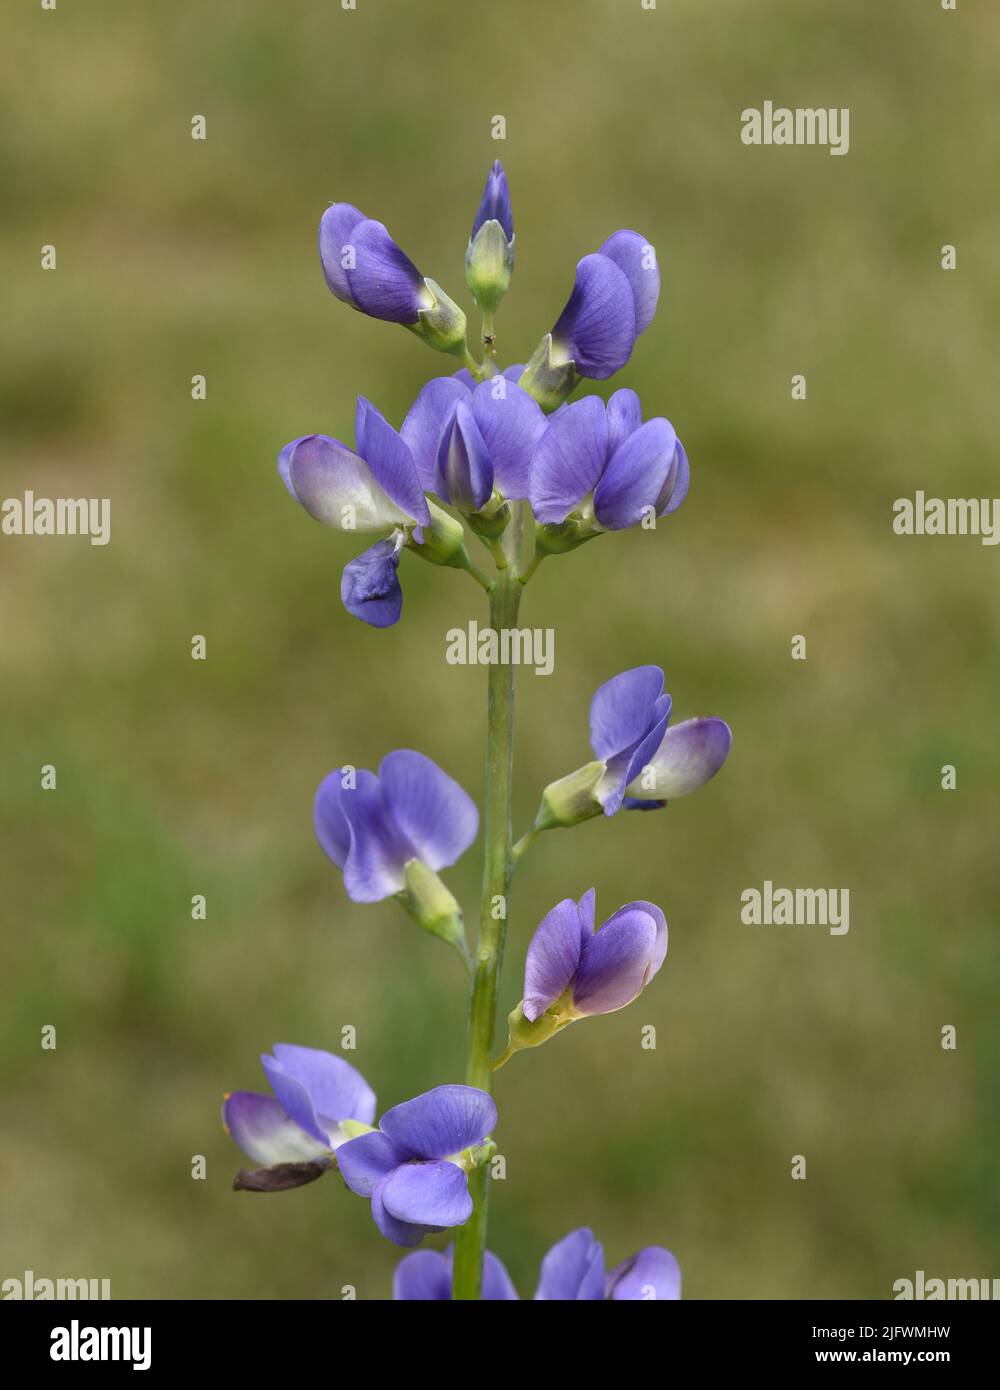 Faerberhuelse, Baptisia tinctoria, ist eine wichtige Heilpflanze mit blauen Blueten und wird viel in der Medizin verwendet. Sie ist eine Staude und ge Stock Photo